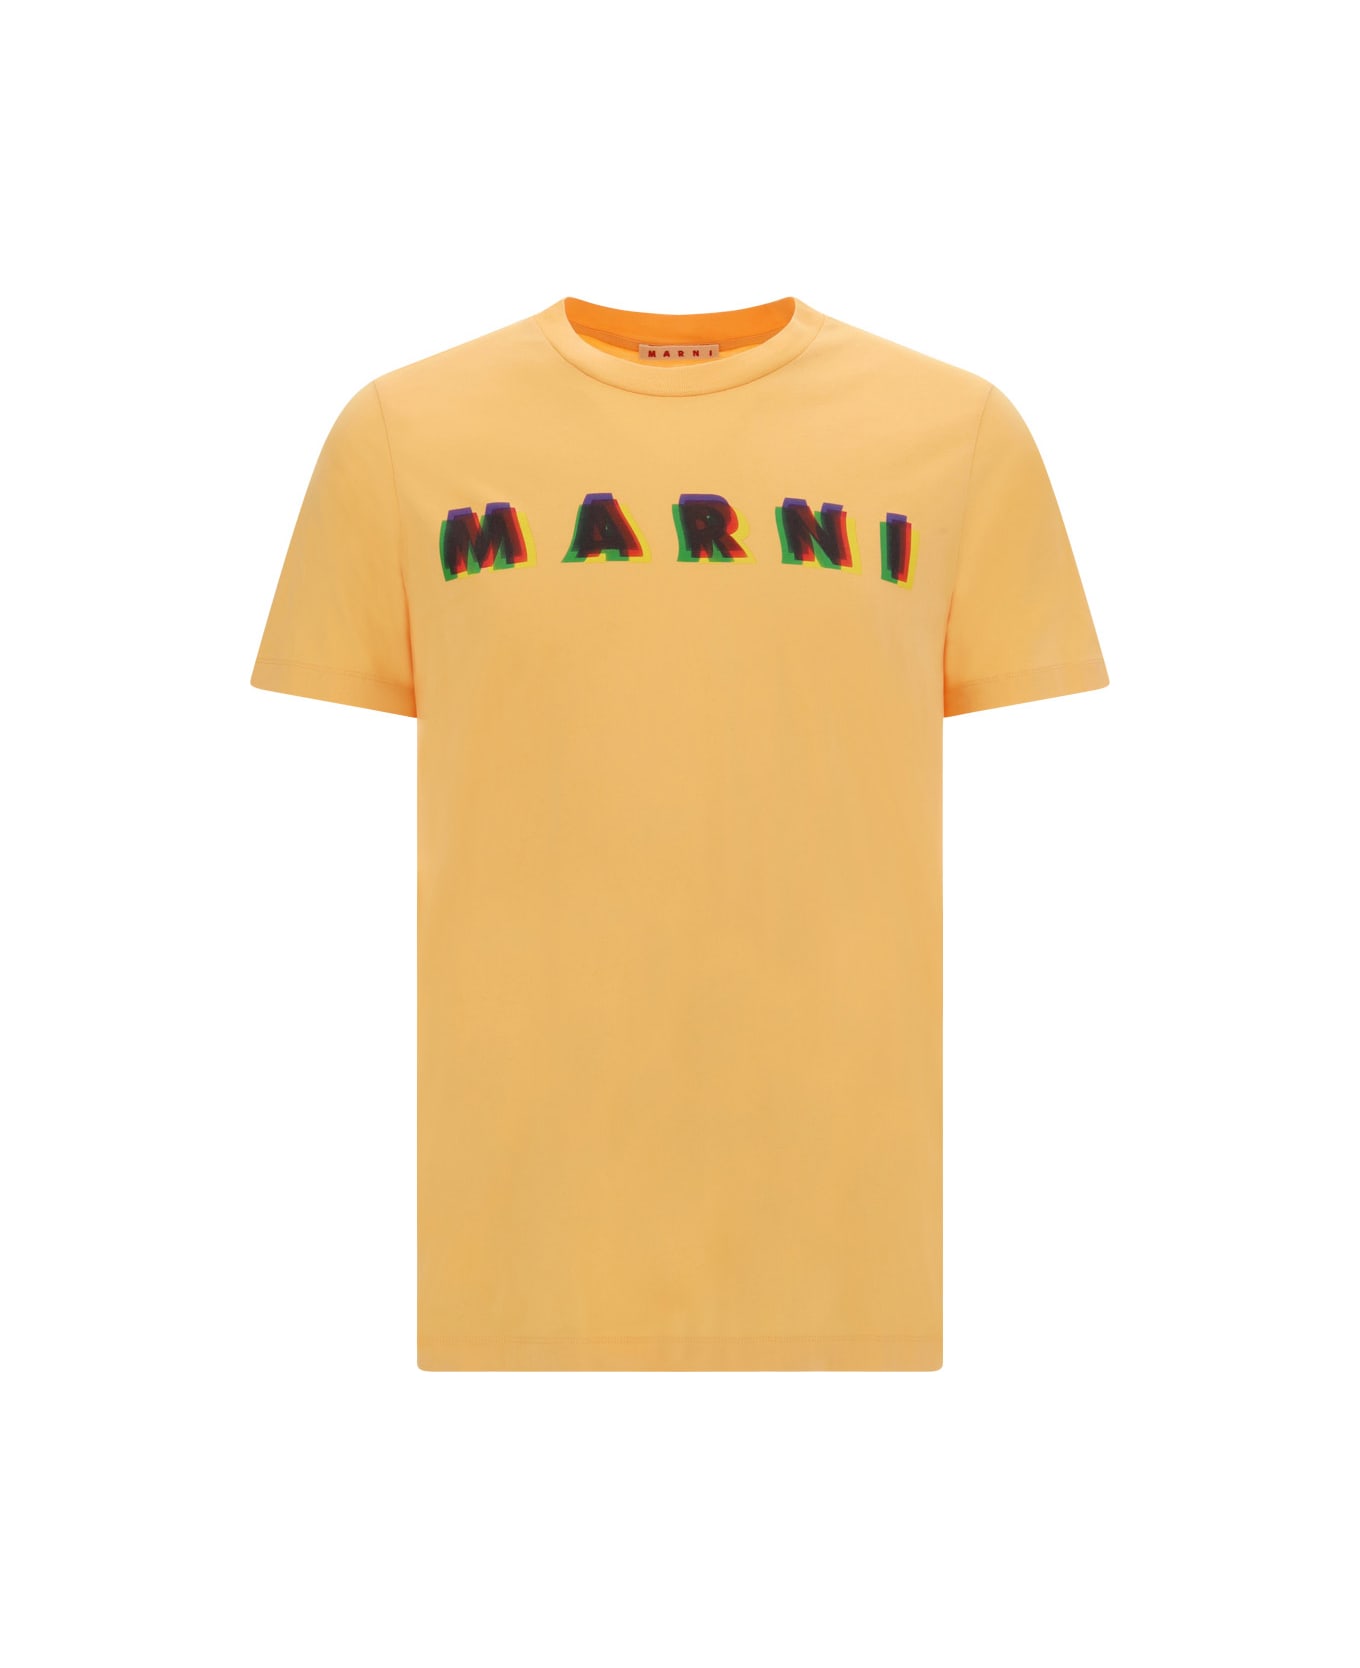 Marni T-shirt - Mcr08